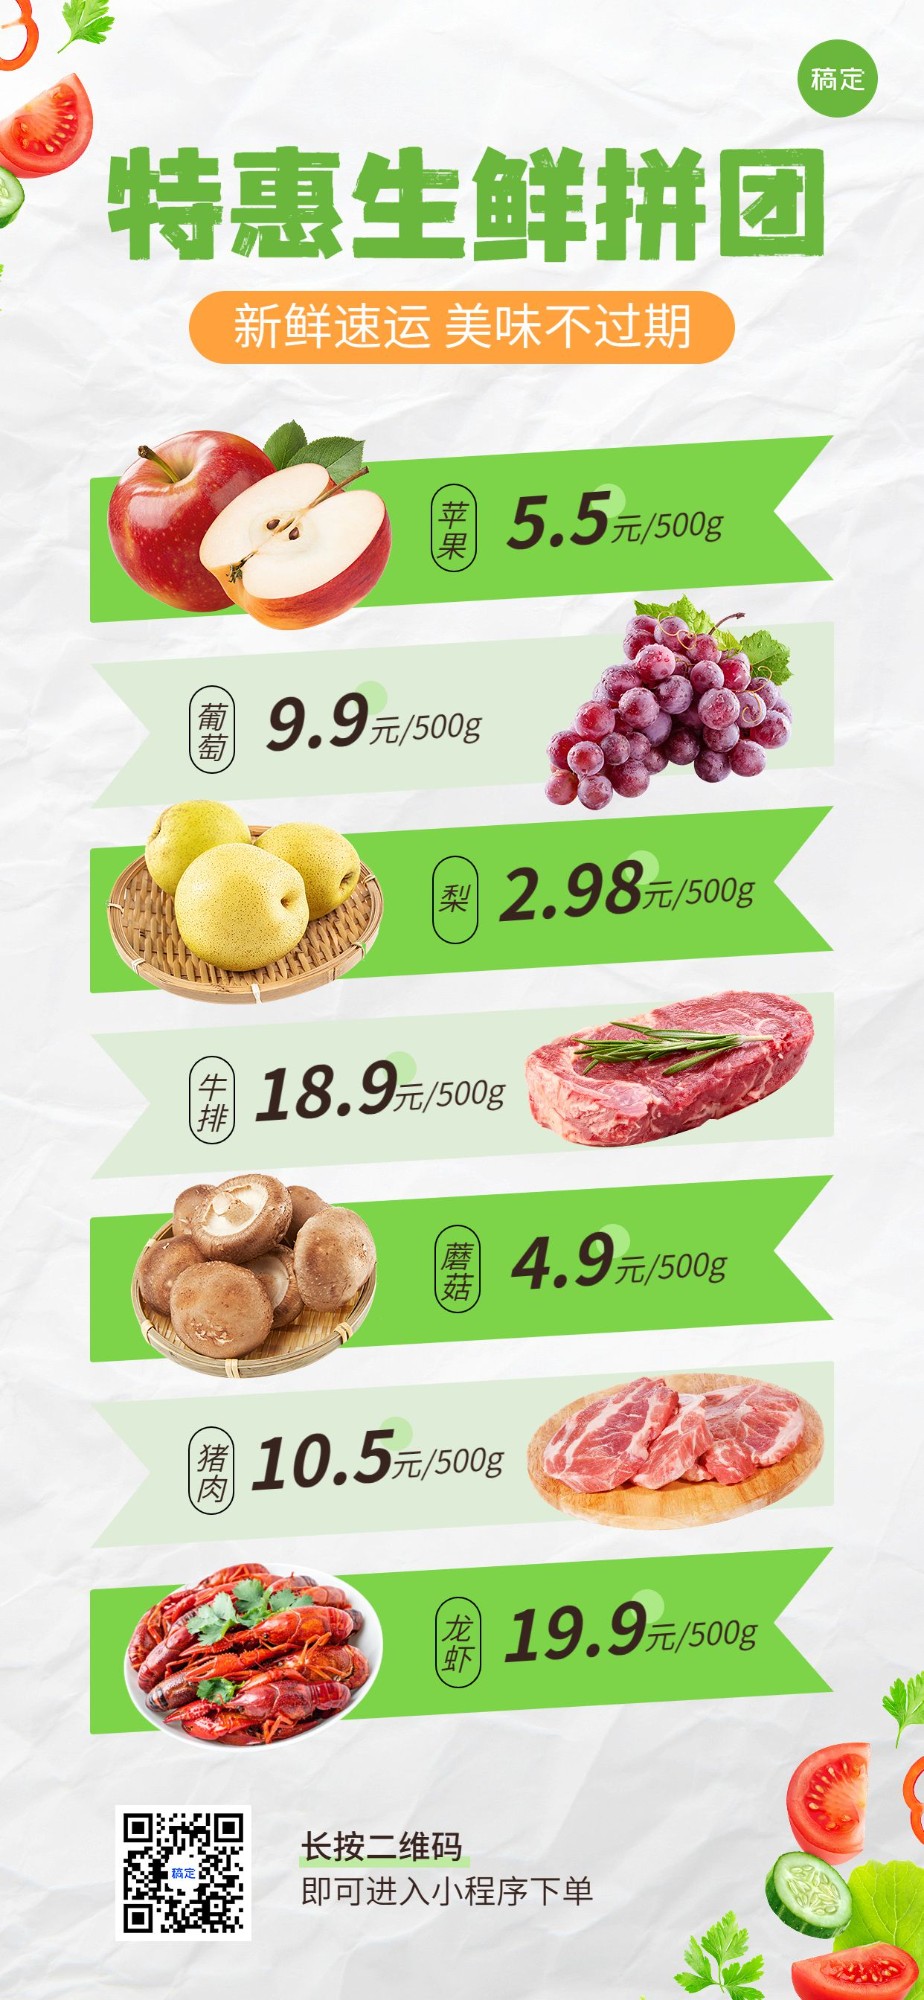 食品生鲜微商团购拼团价目表全屏竖版海报预览效果